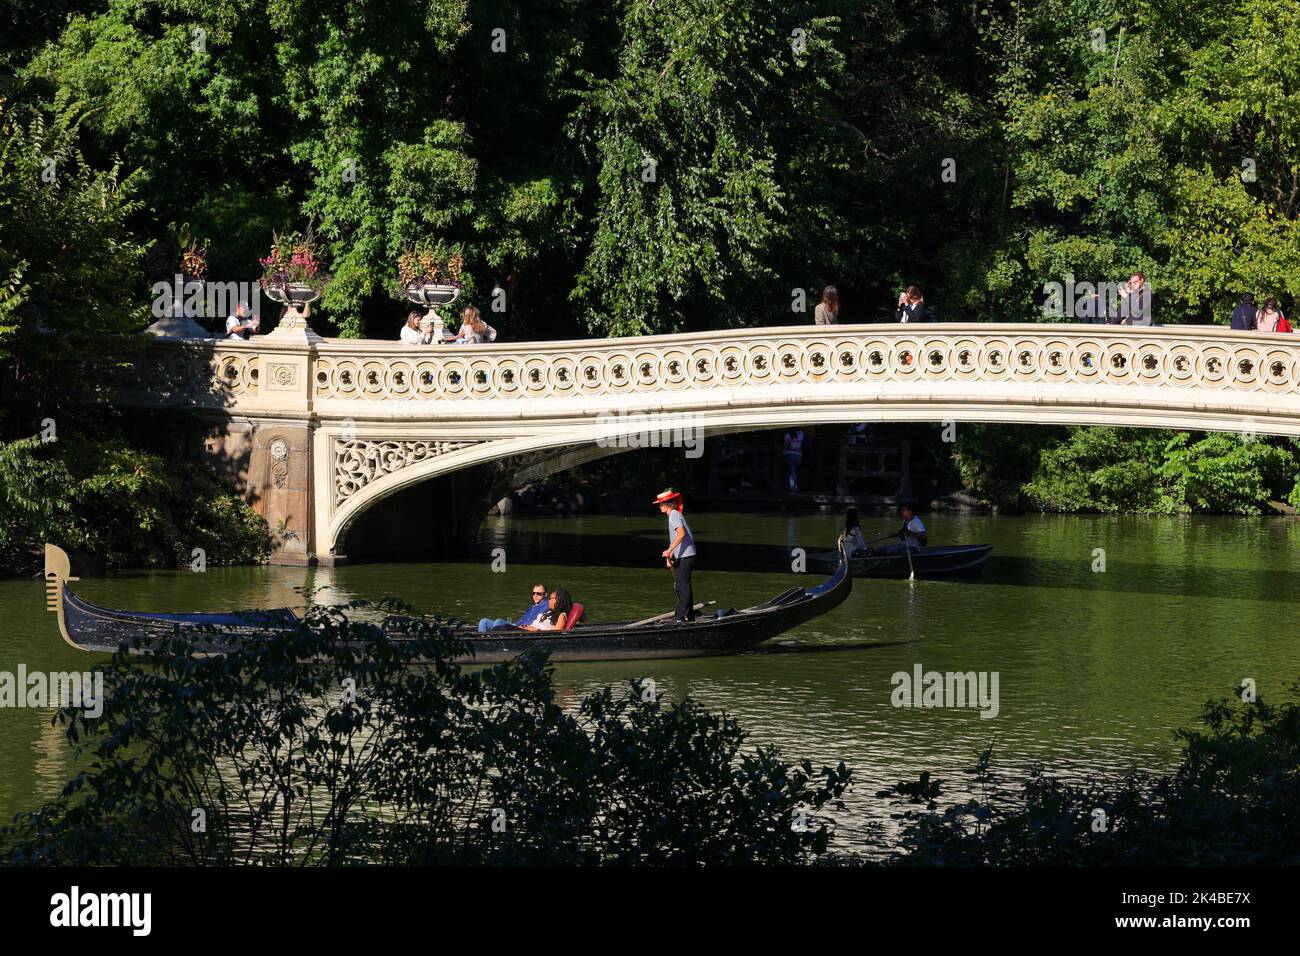 Una gondola passa sotto il Bow Bridge a Central Park, New York. Il ponte di Bow si estende sul lago che collega Bethesda Terrace al Ramble Foto Stock